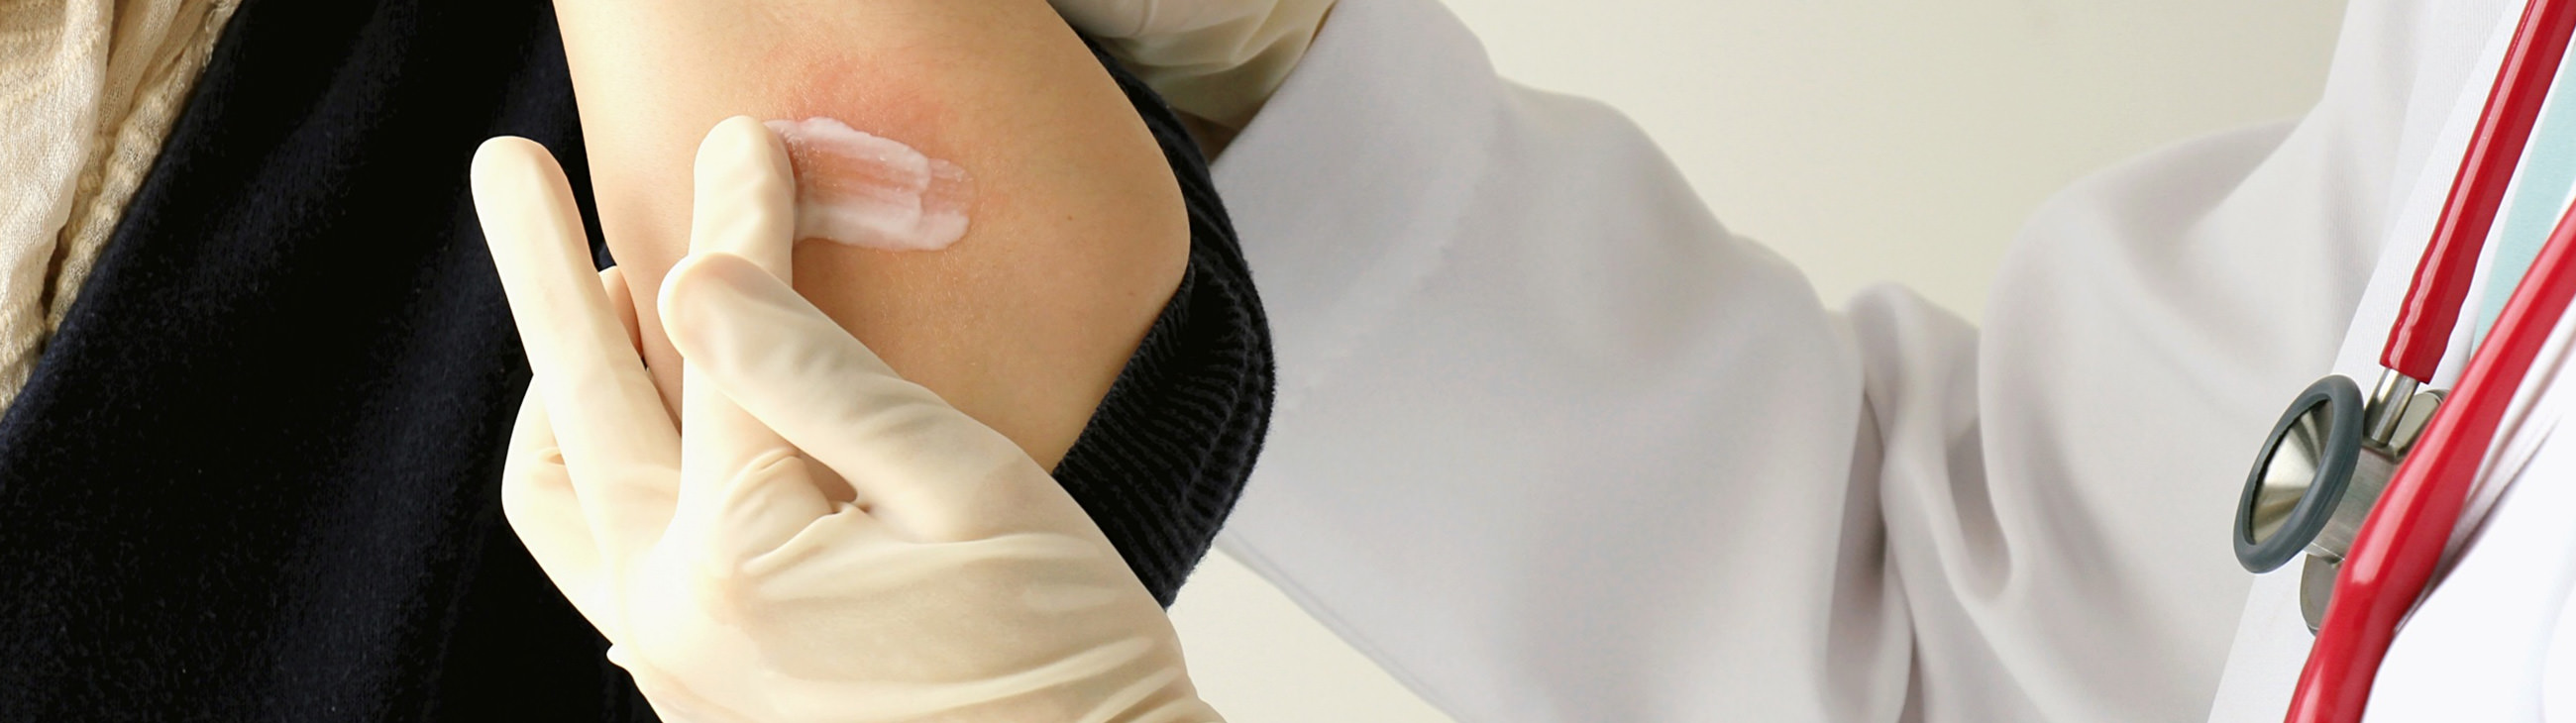 Os tratamentos para tratar o eczema